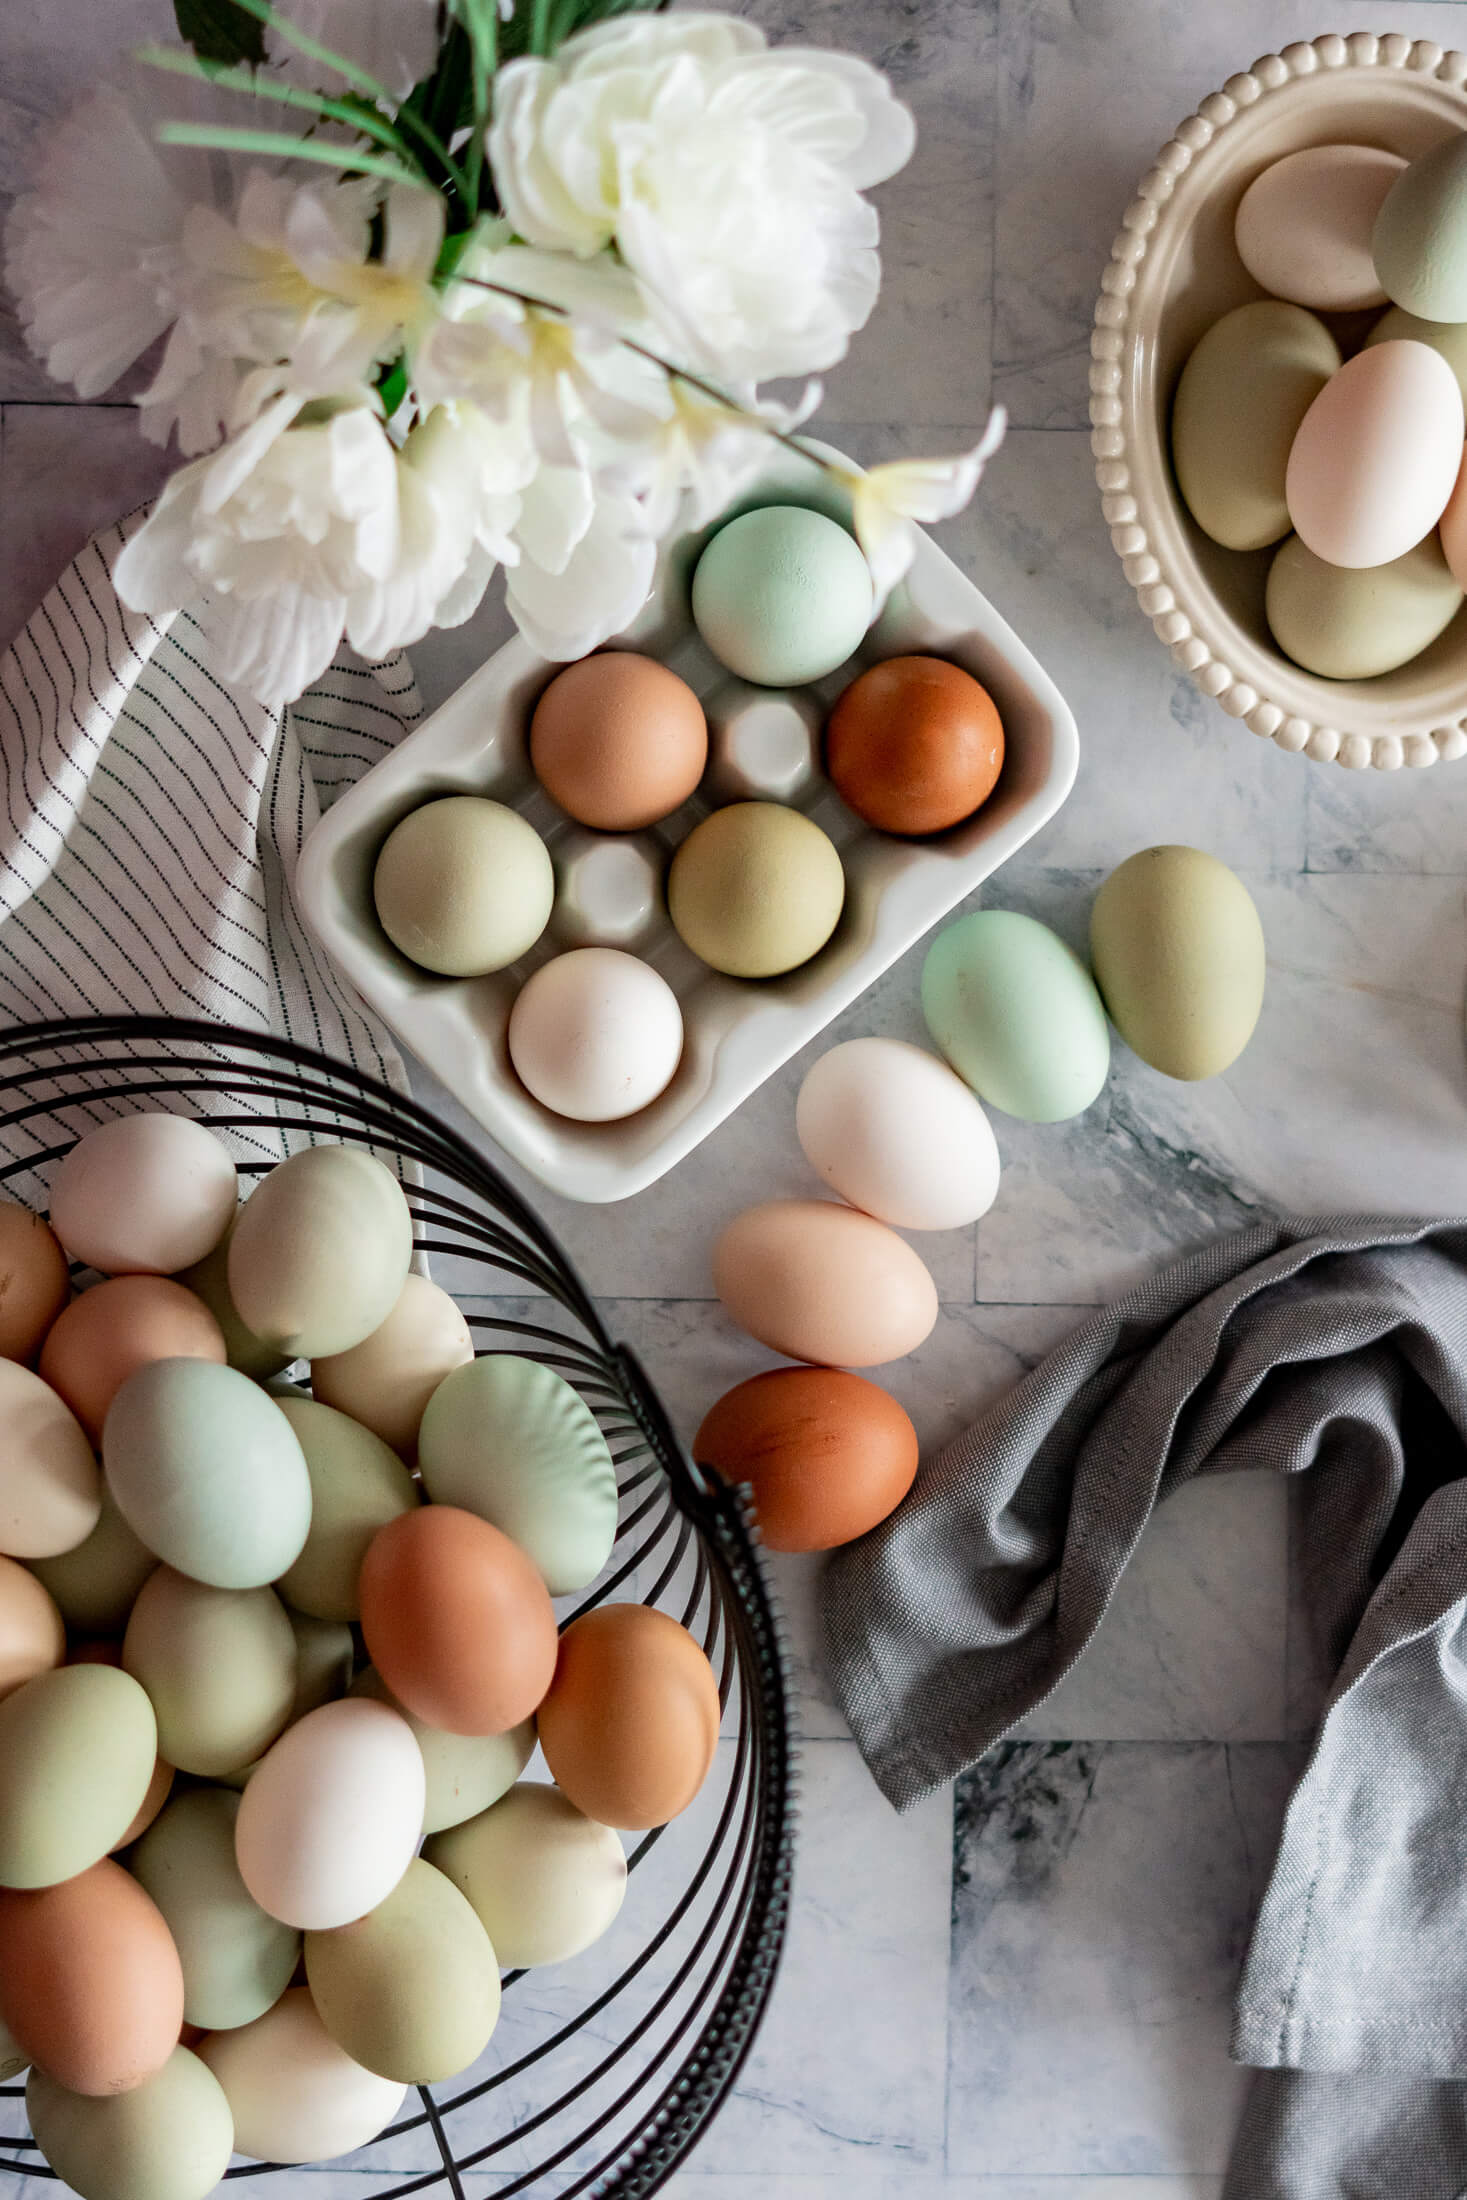 Farm fresh eggs in a basket.